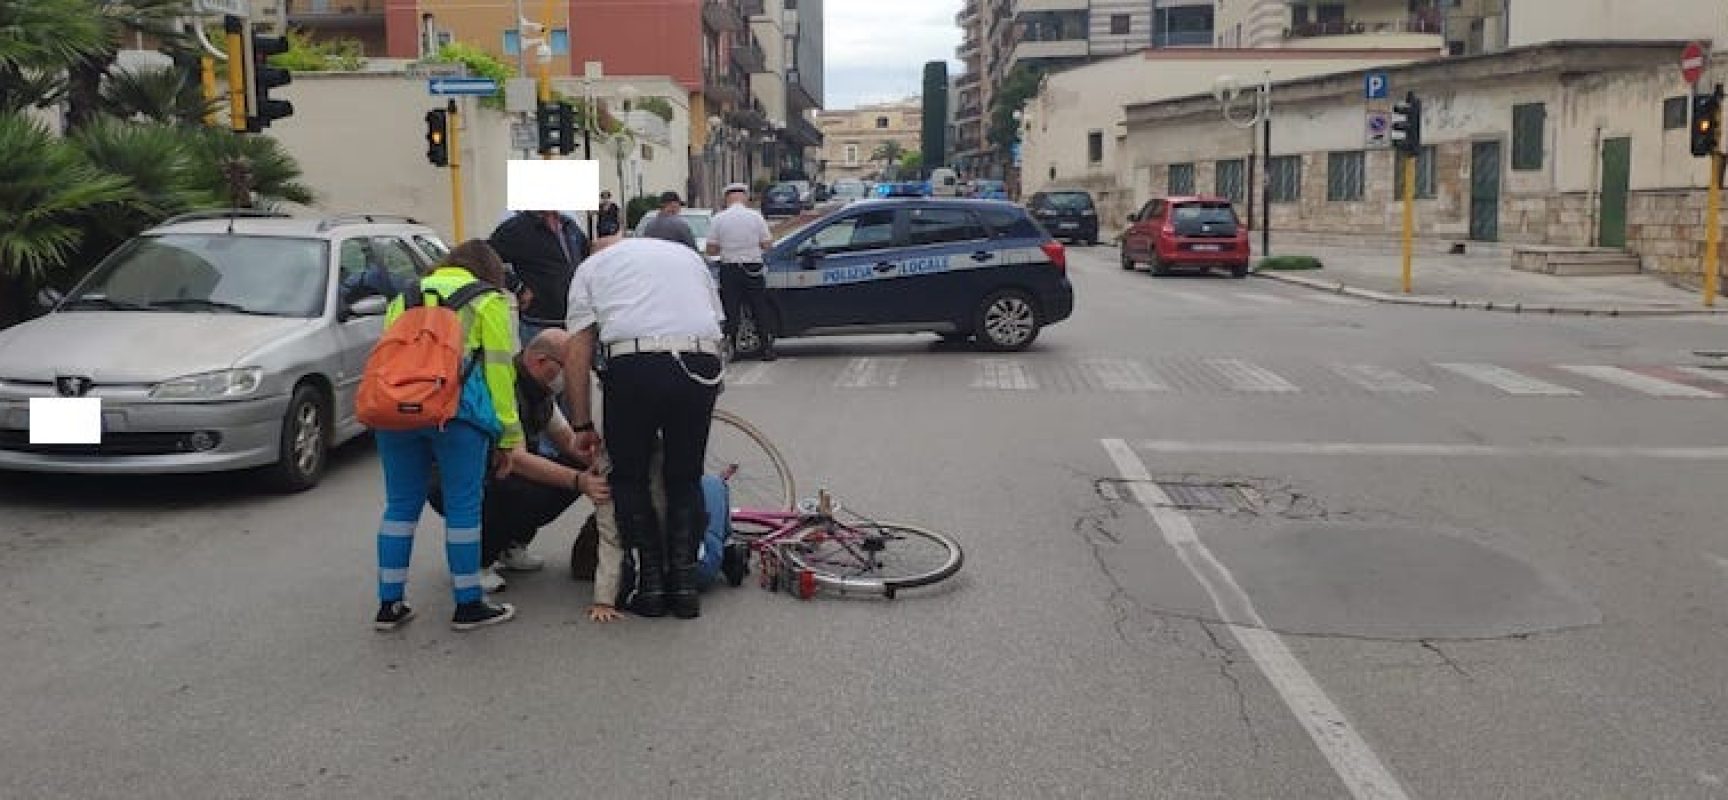 Impatto auto-bici su via Vittorio Veneto: 24enne in ospedale